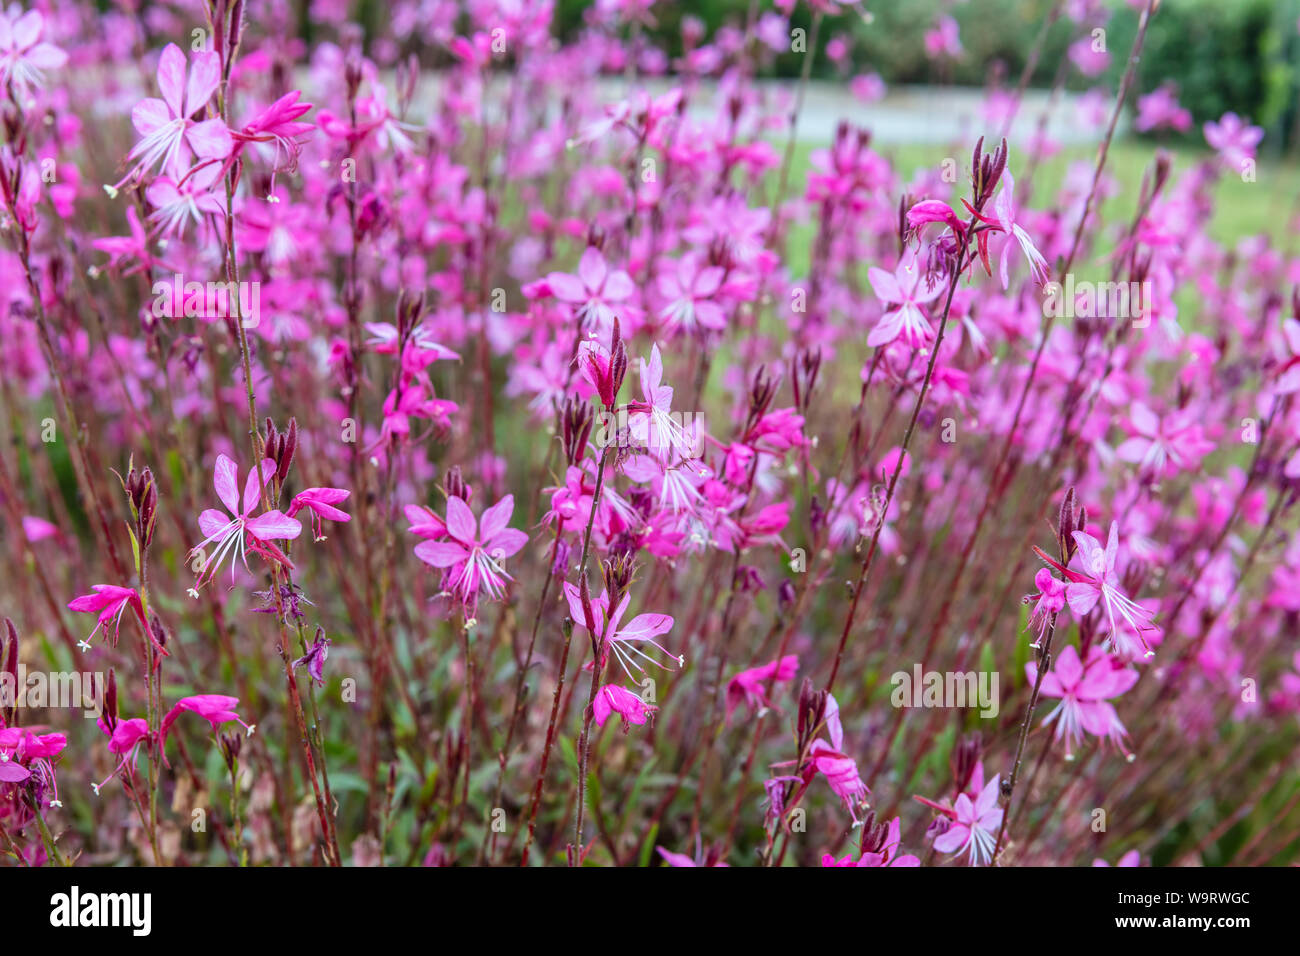 Small dark pink flowers Gaura lindheimeri Belleza in a garden. Stock Photo